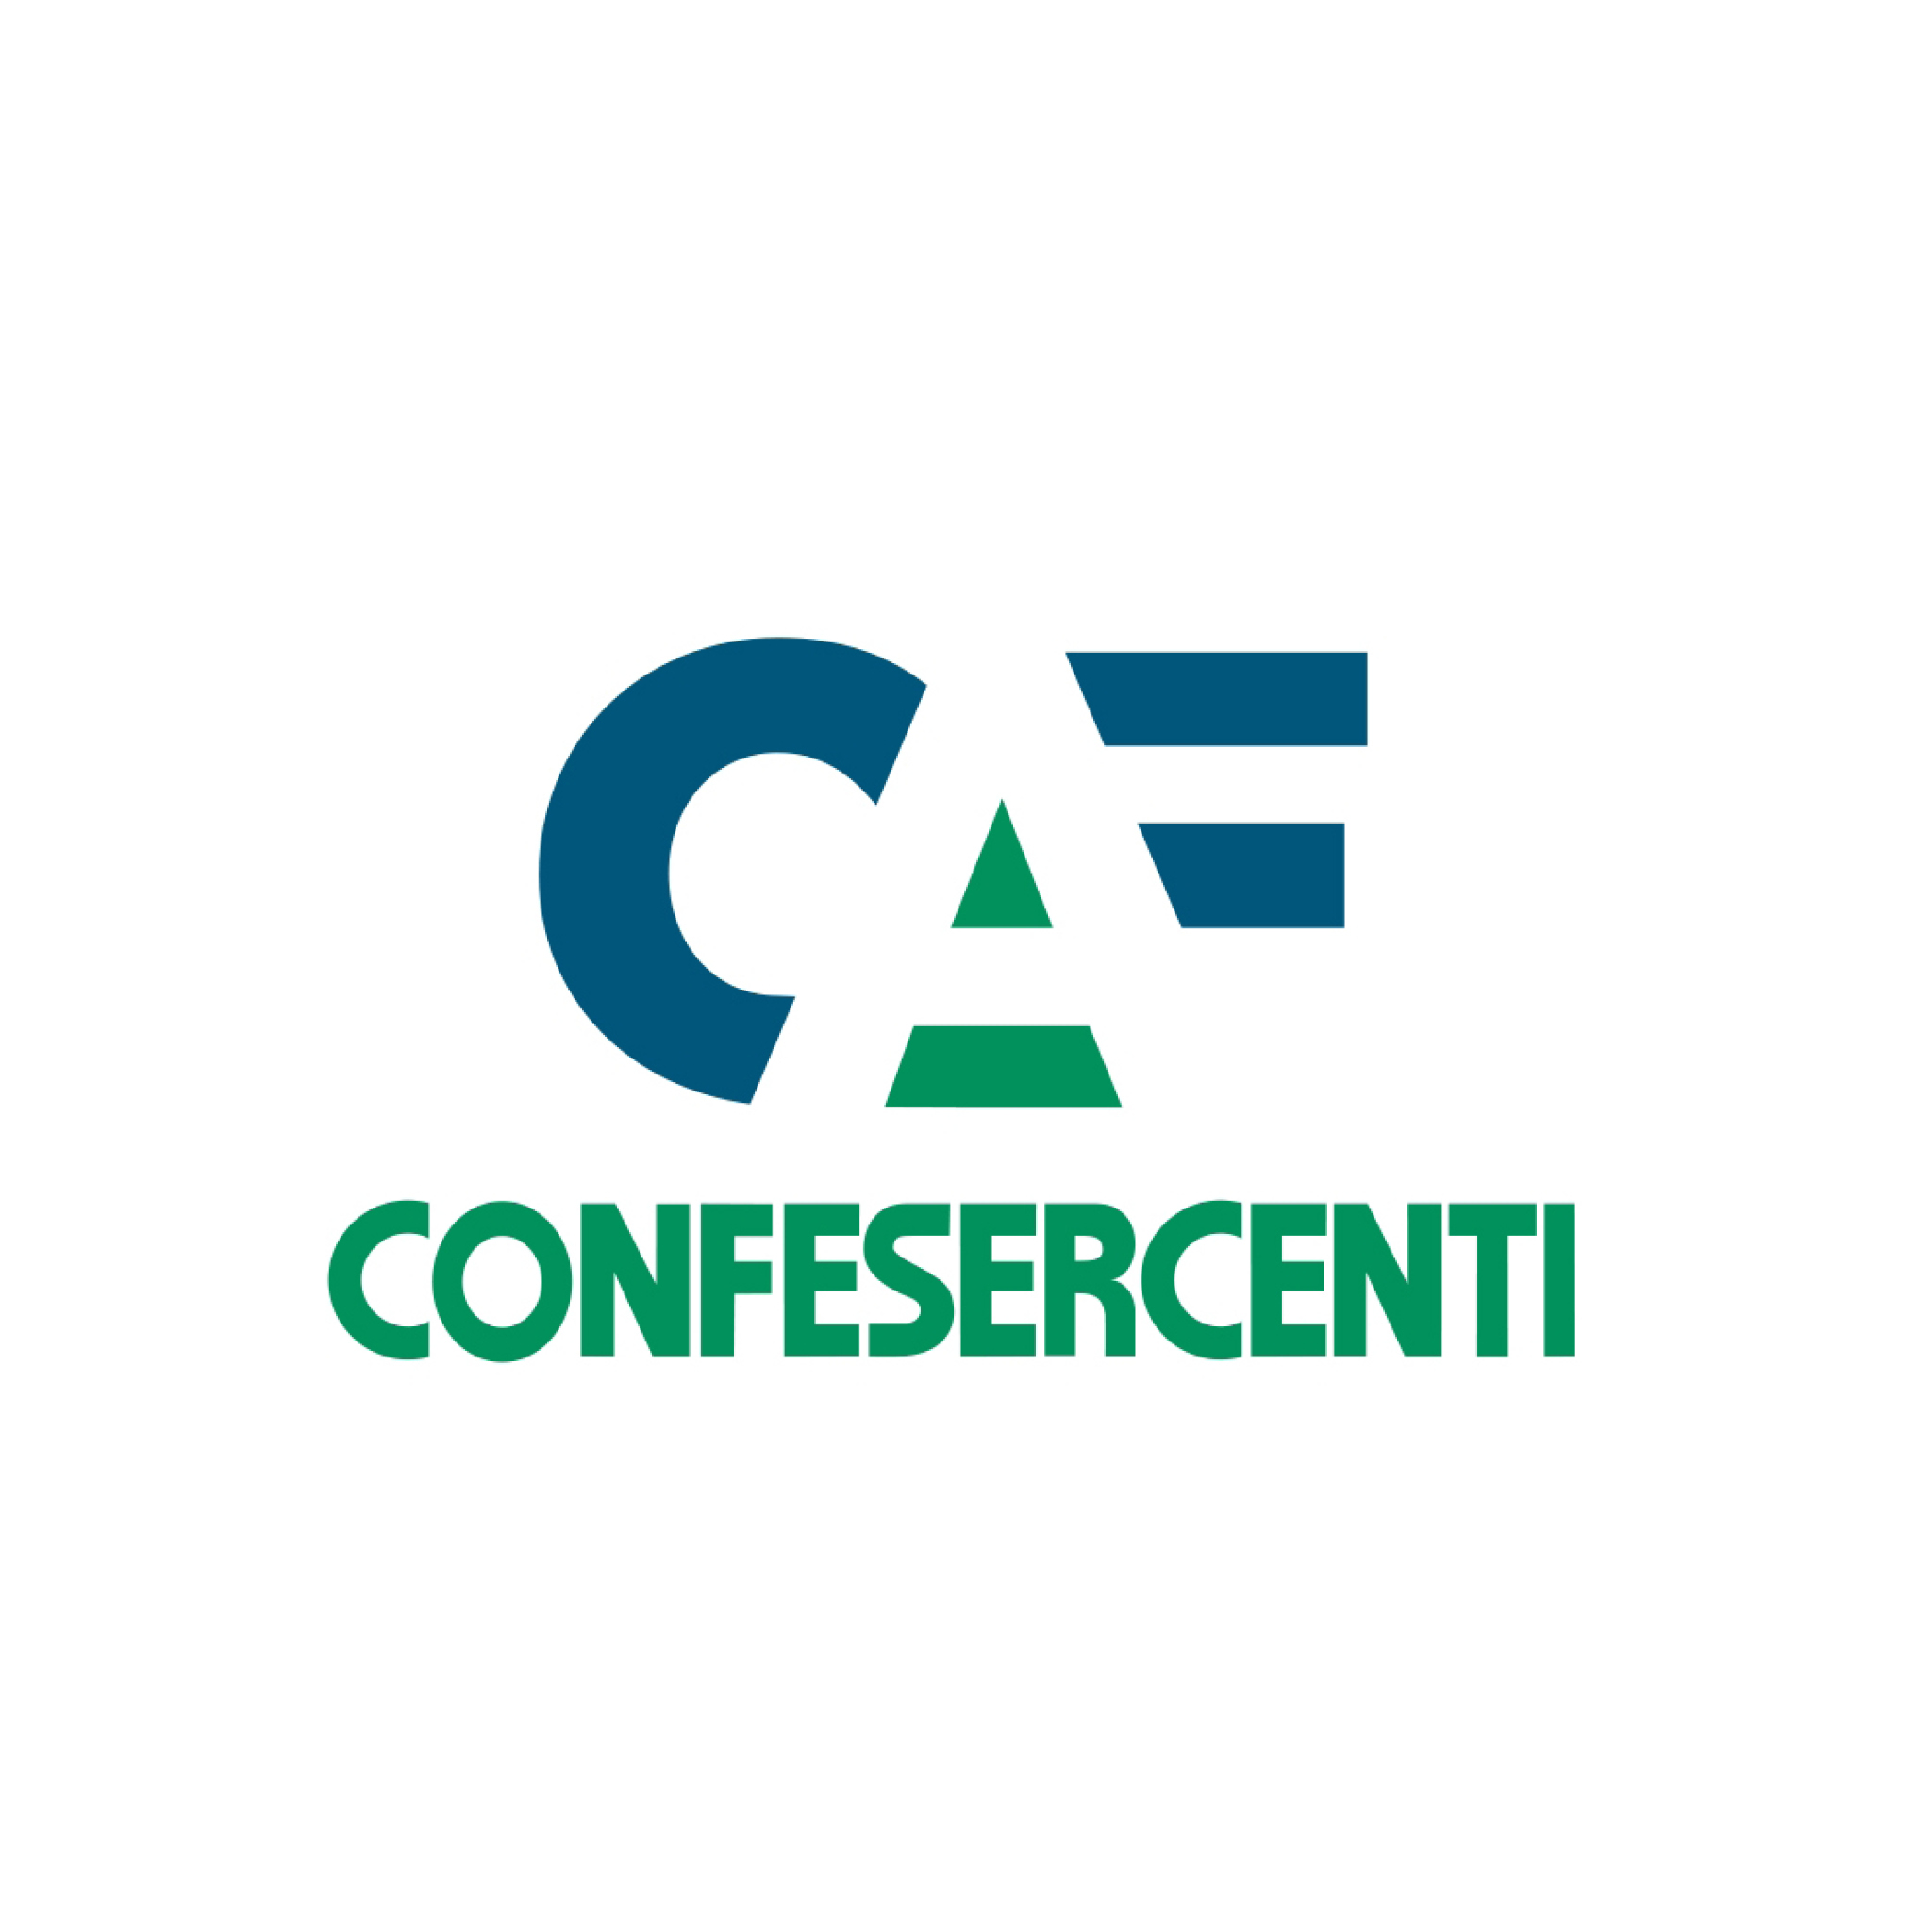 CAF Confesercenti